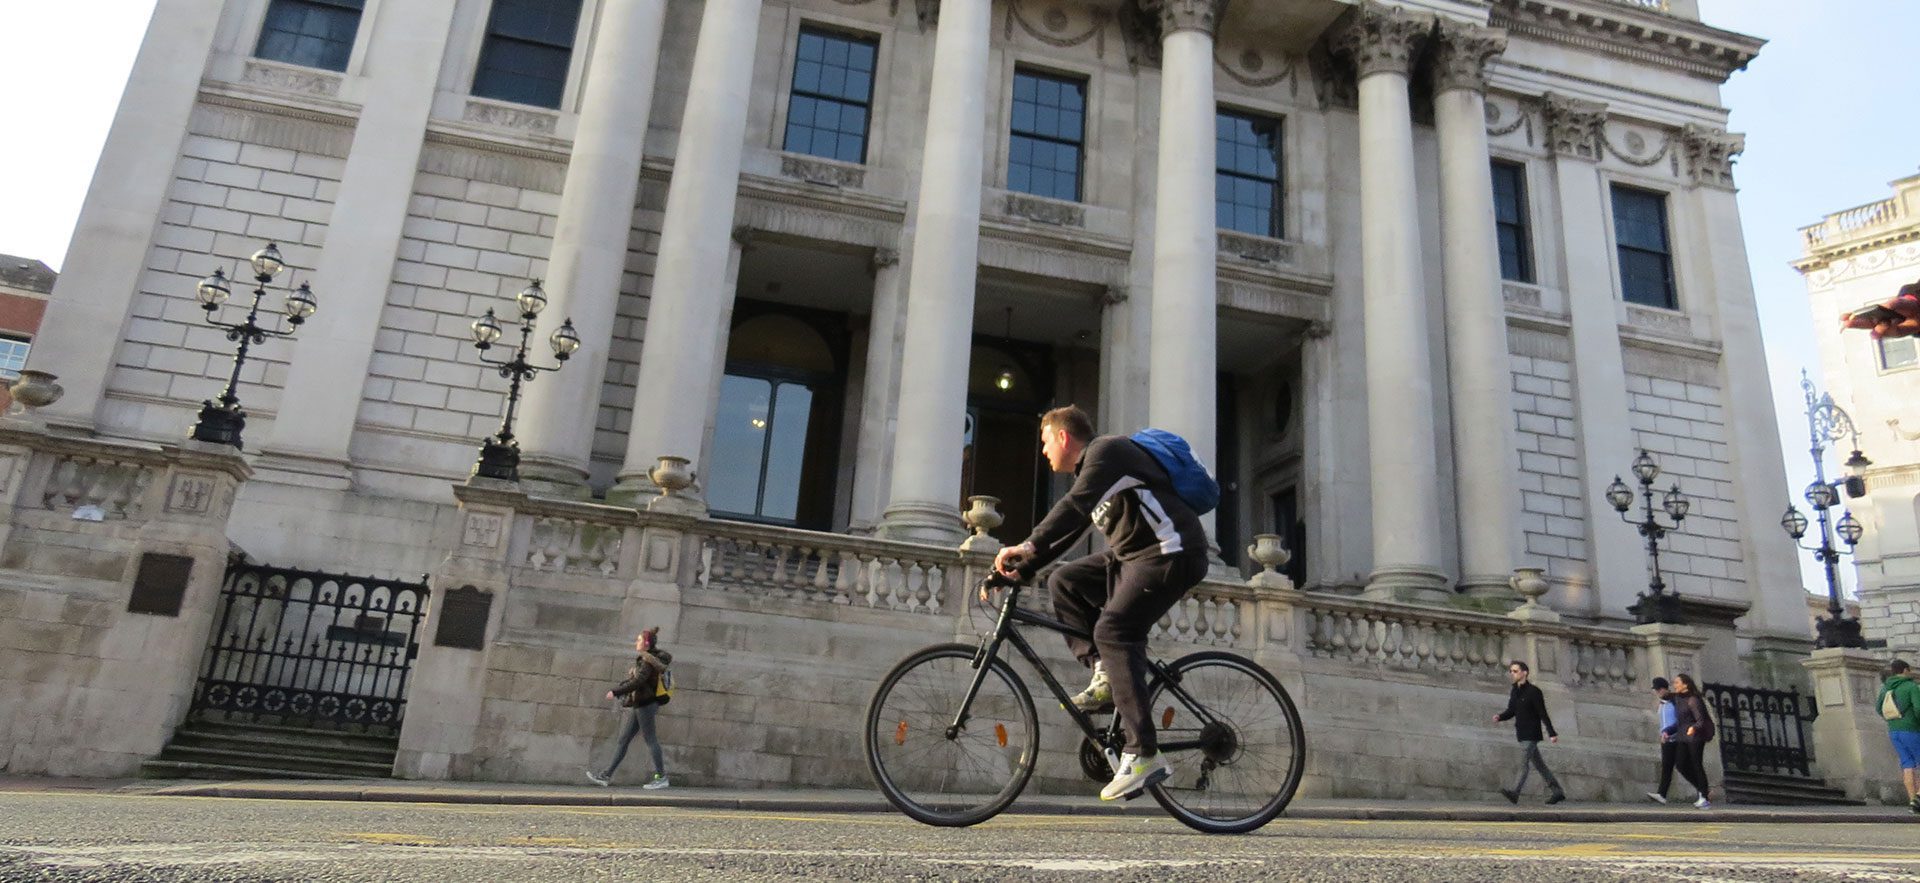 City Hall, Dublin with cyclist